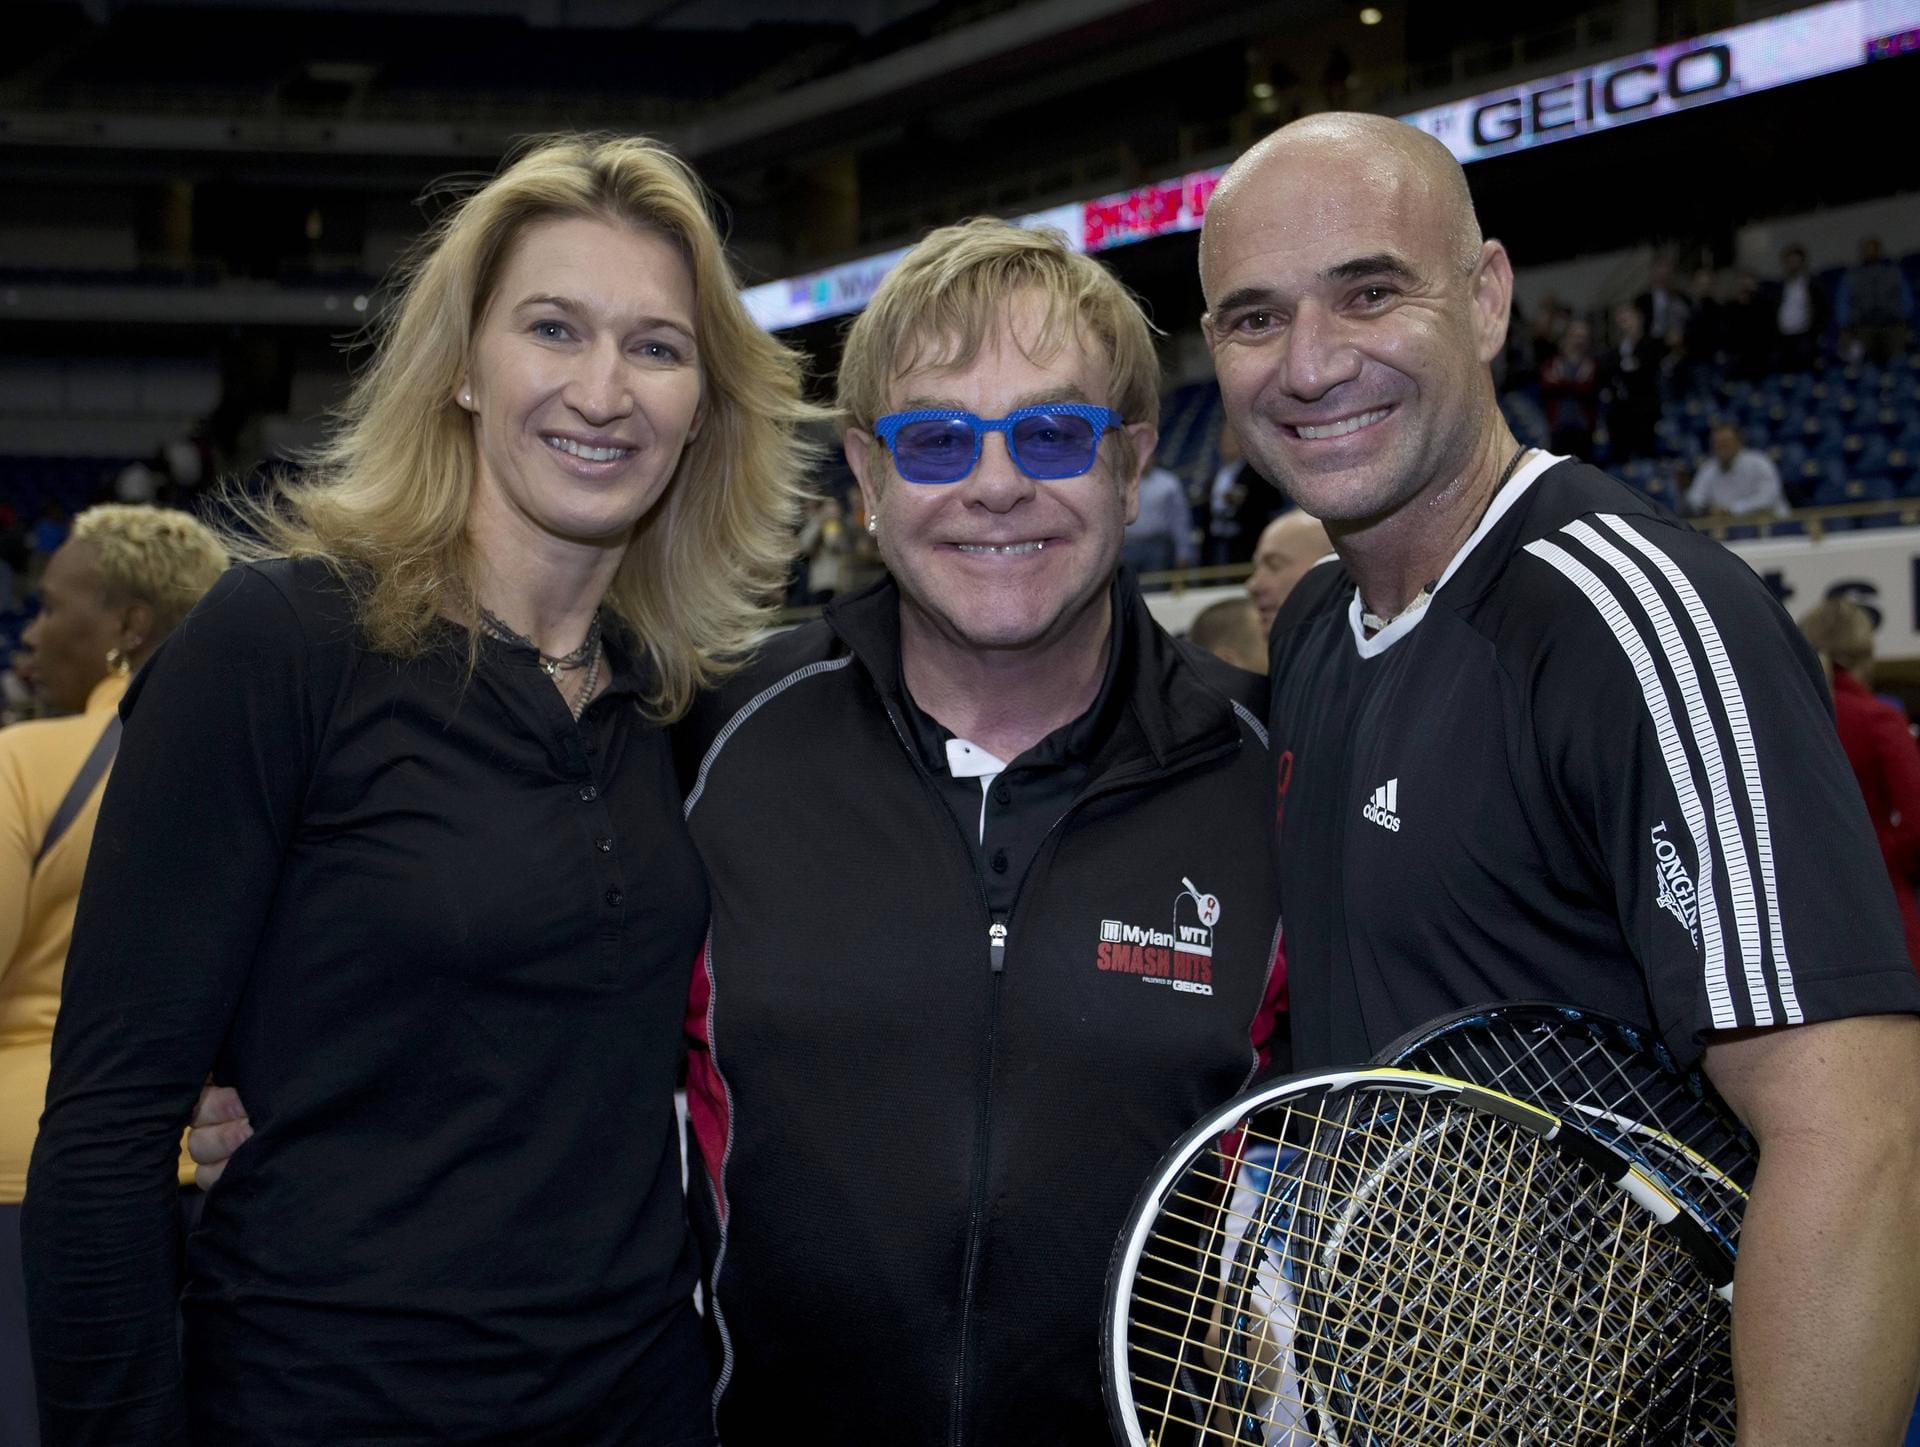 2012: Sie sind gemeinsam mit Musiker Elton John bei einem Charity-Turnier.